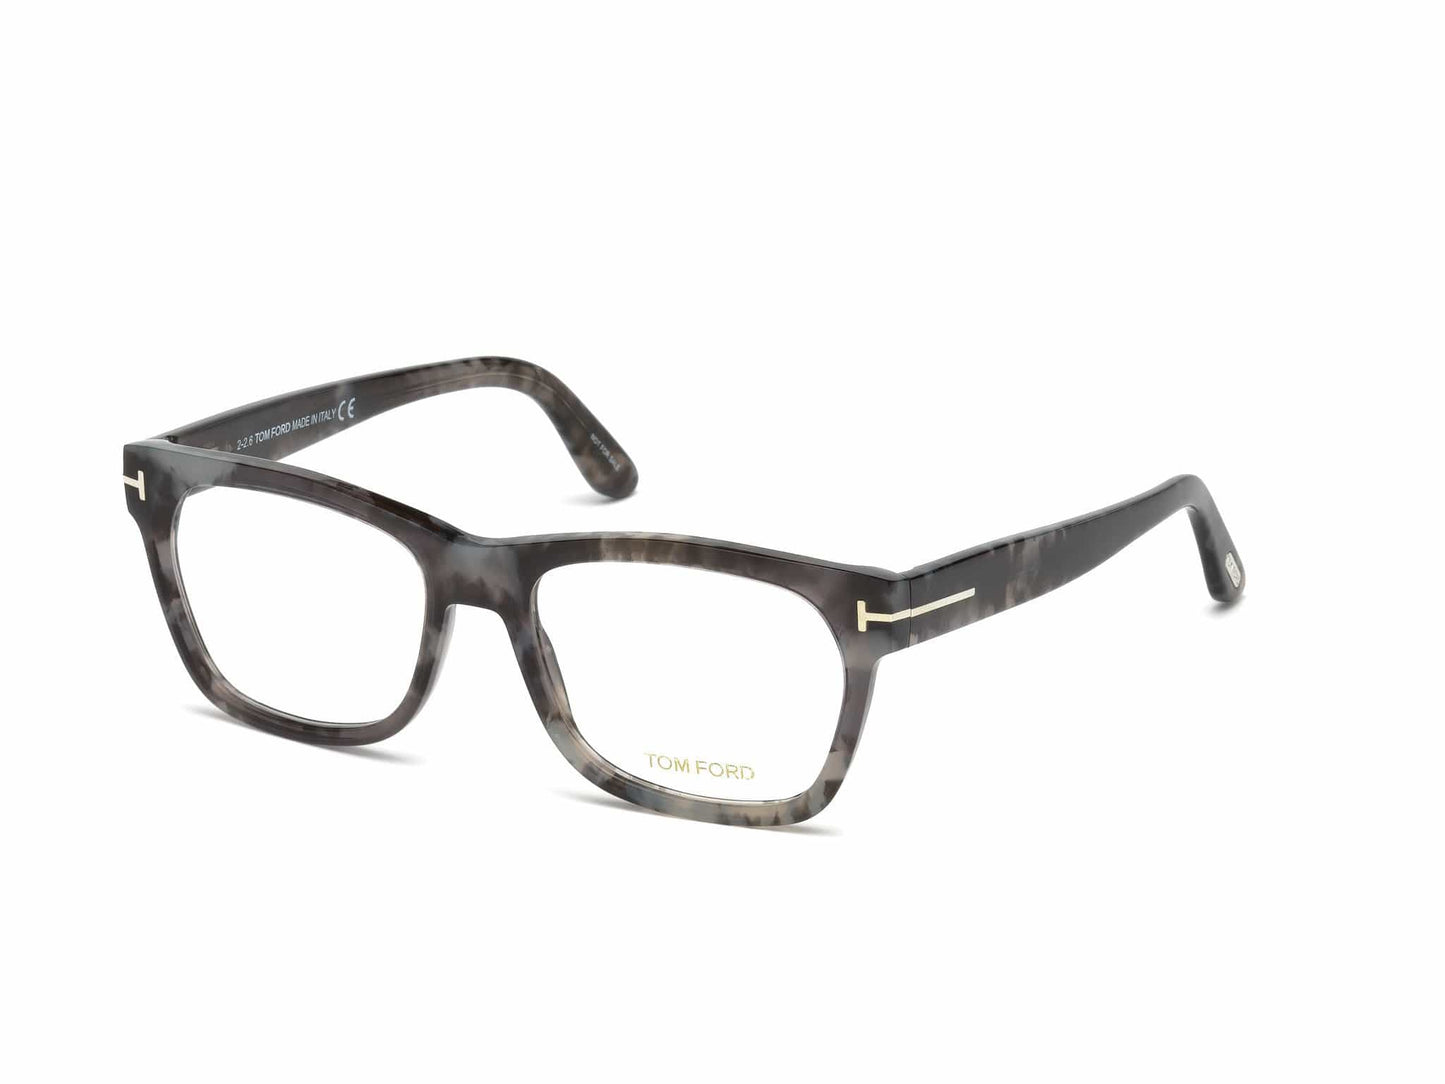 Tom Ford FT5468 Geometric Eyeglasses 056-056 - Shiny Grey Havana, Shiny Palladium "t" Logo